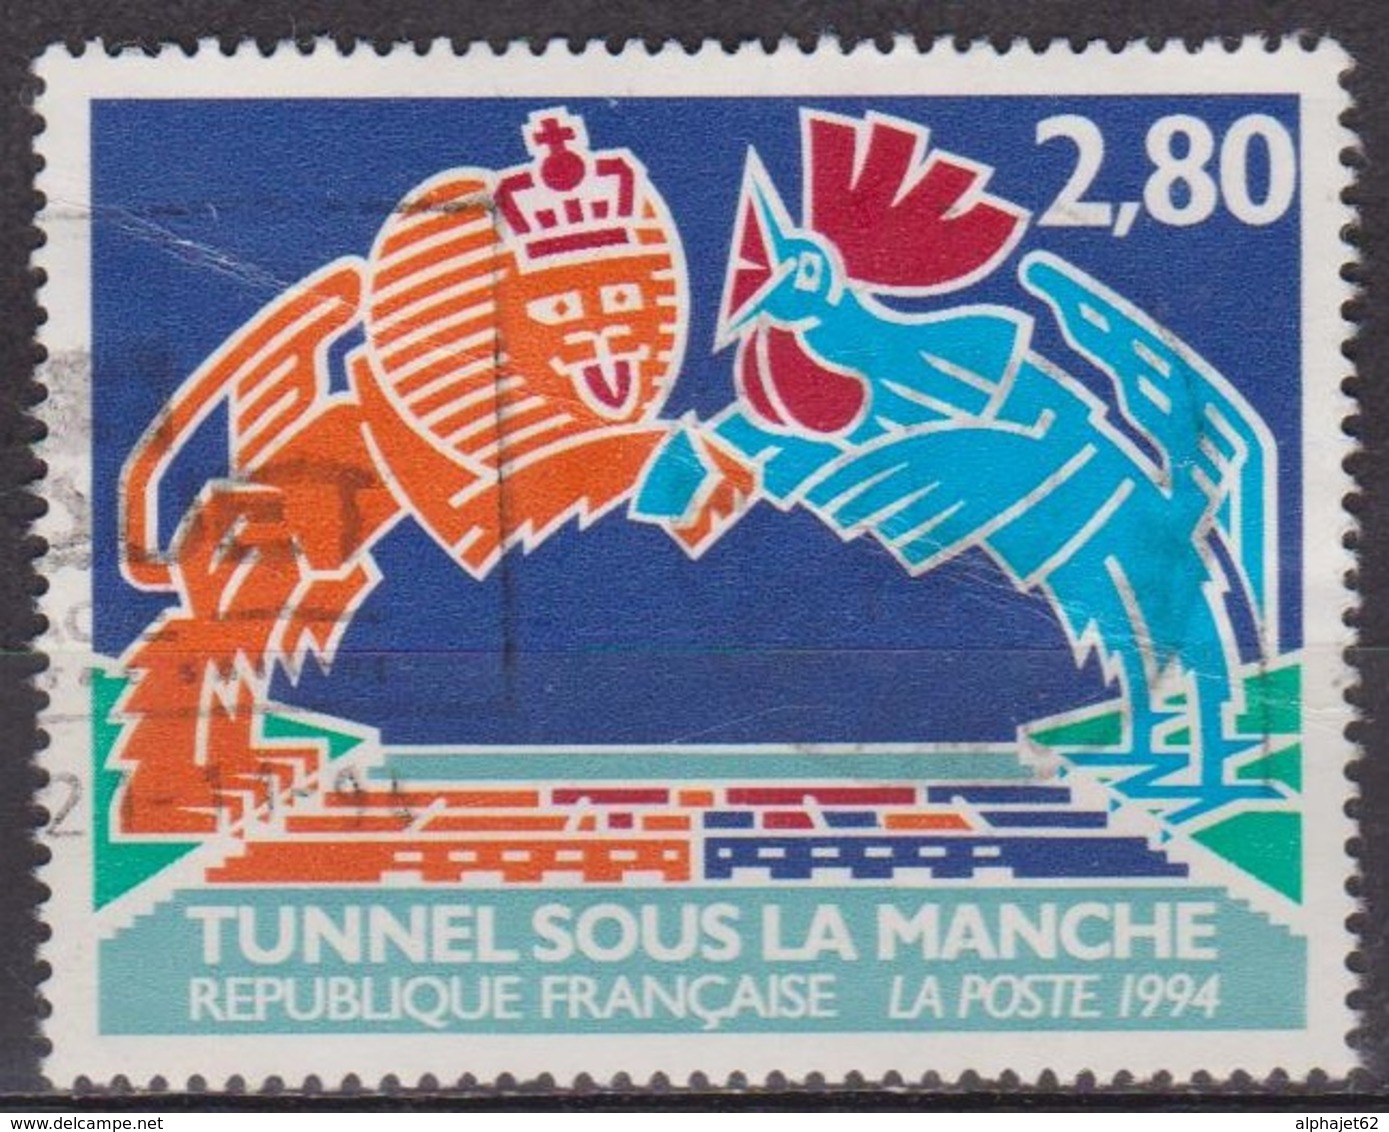 Tunnel Sous La Manche - FRANCE - Lion, Coq, Cocardes, Train - N° 2880 - 1994 - Oblitérés